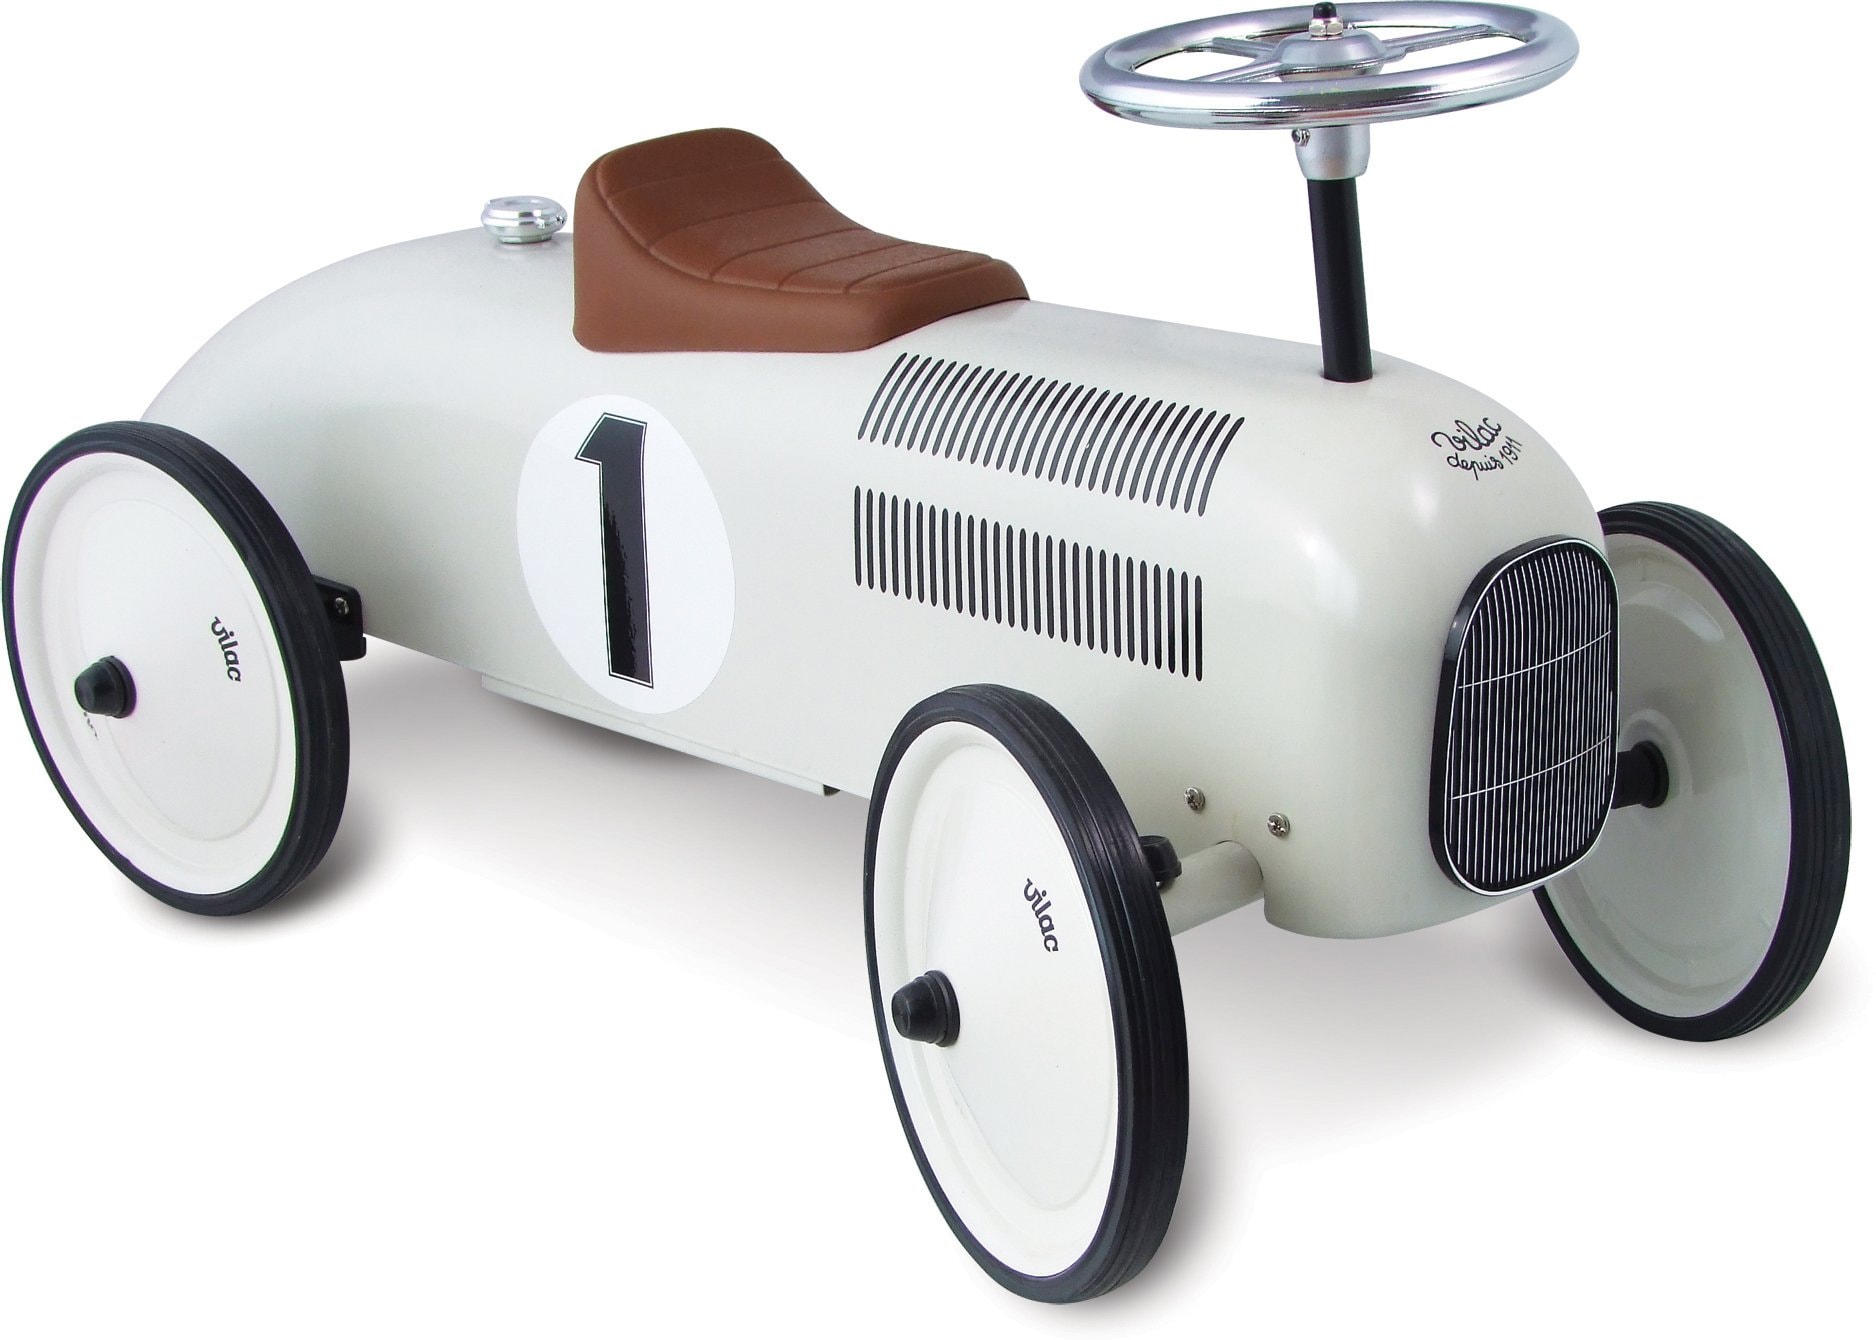 Voiture premier âge - jouet voiture pour enfant - Vilac